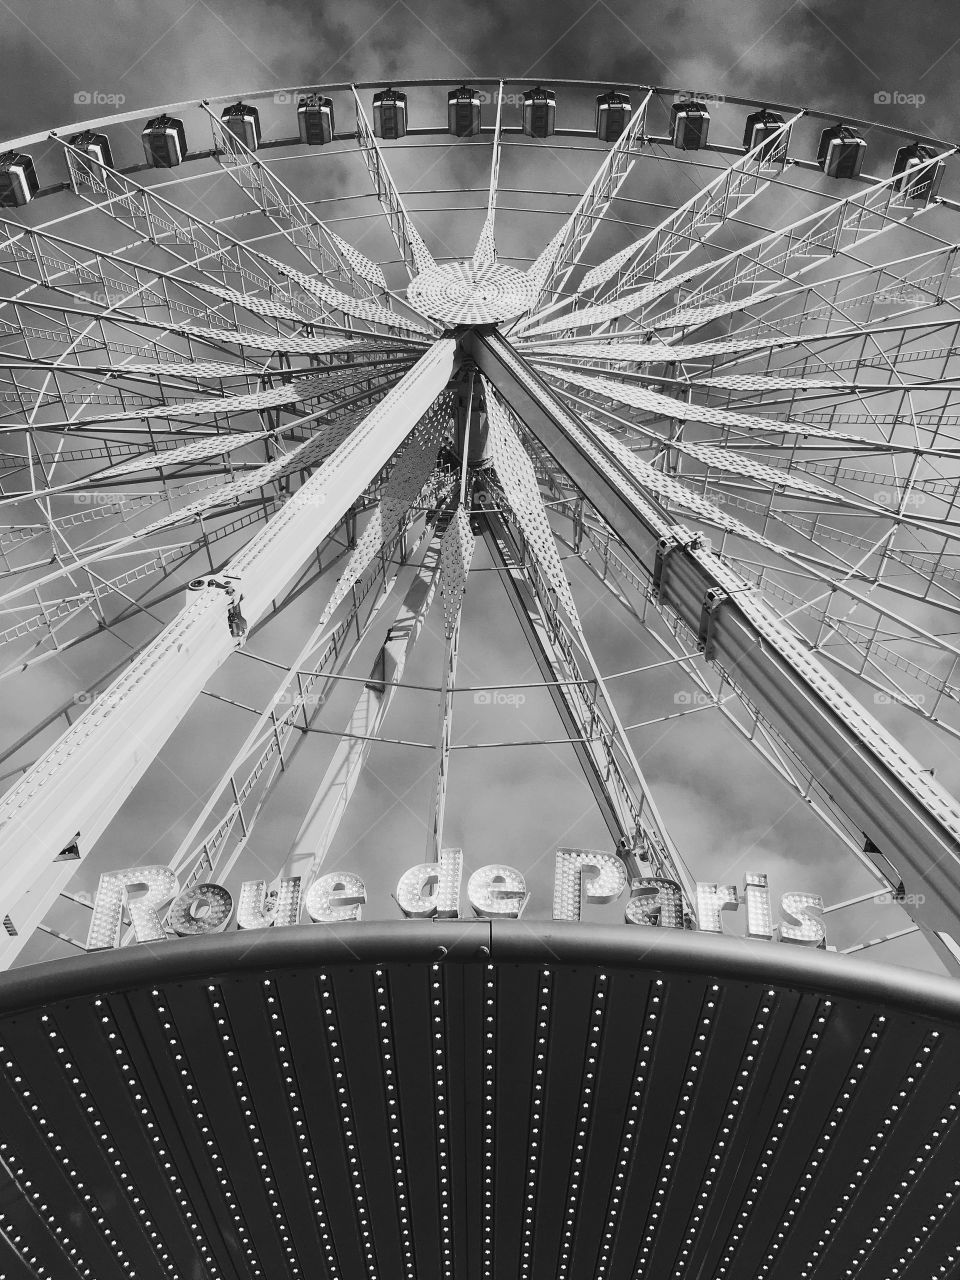 Parisian ferris wheel